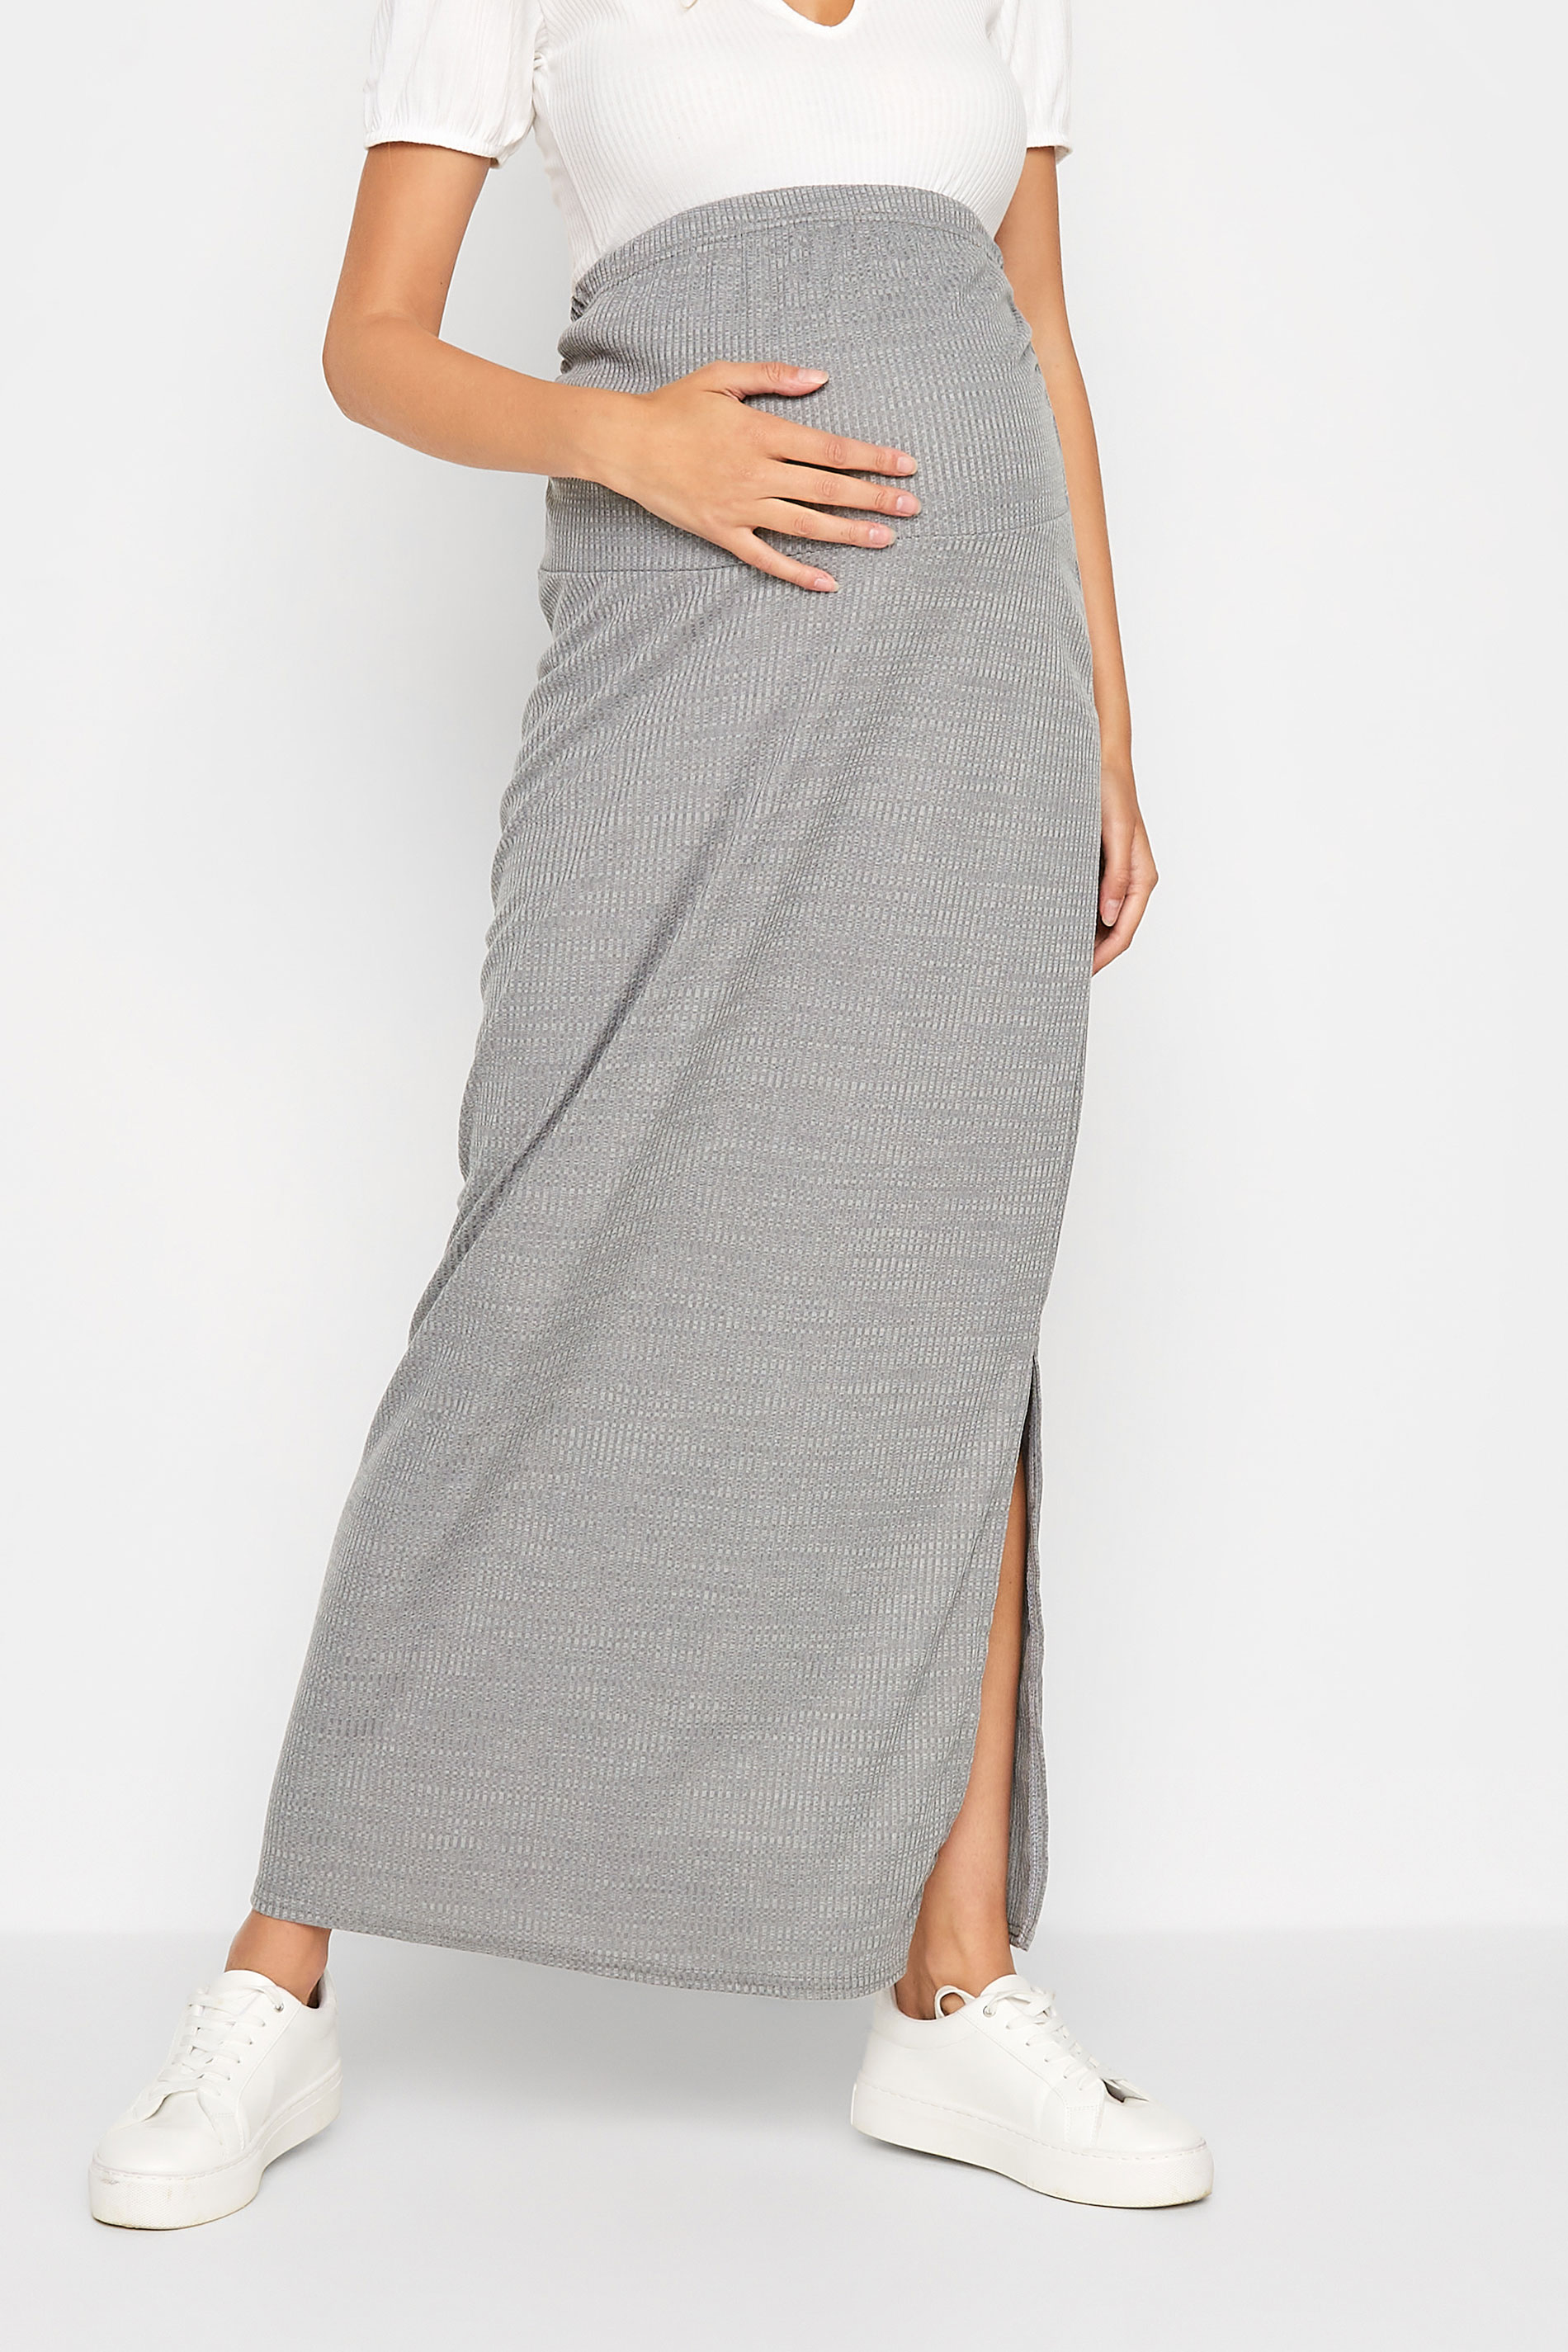 LTS Maternity Grey Ribbed Maxi Skirt | Long Tall Sally 1